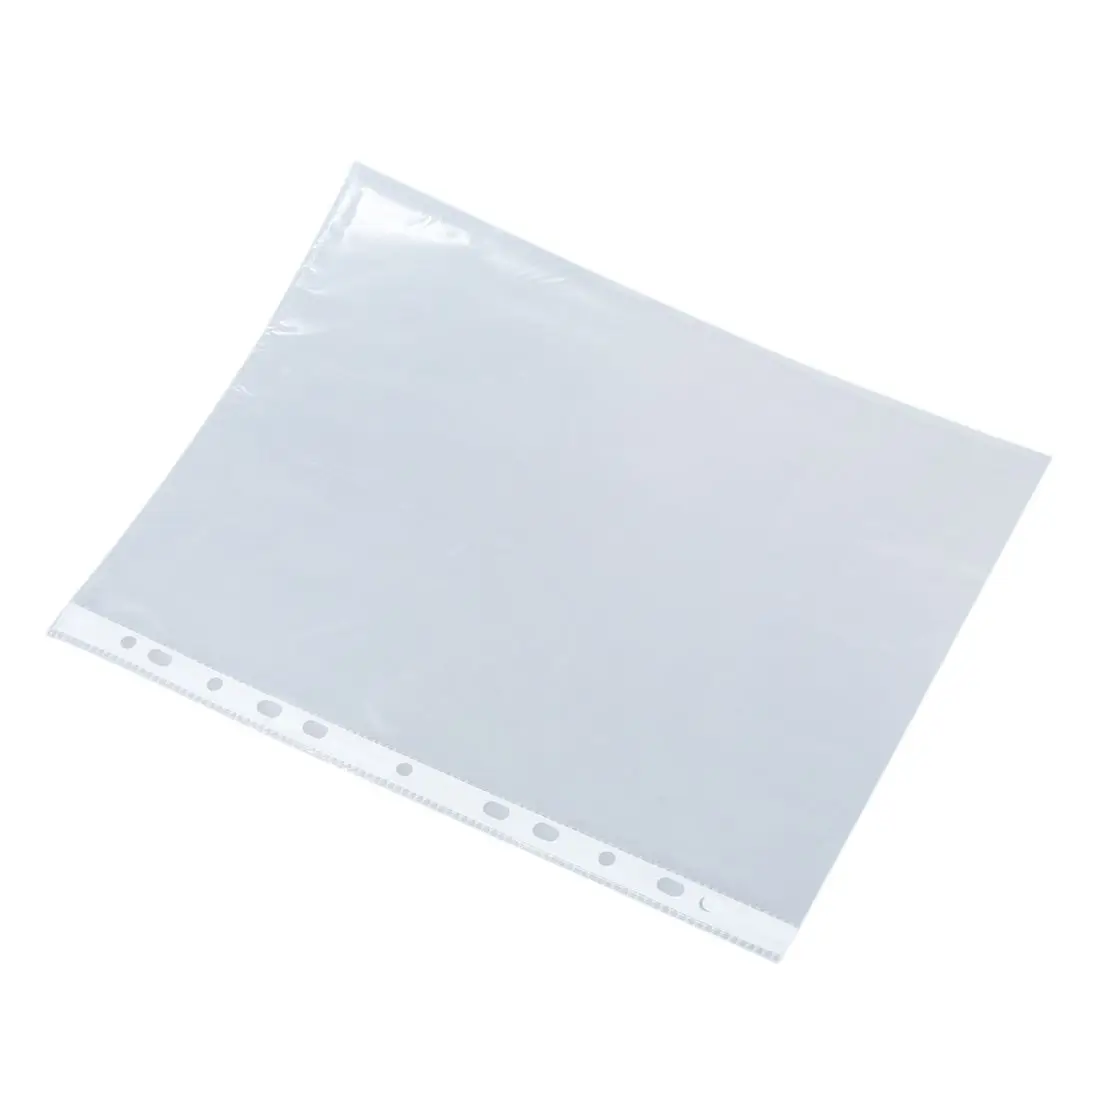 PPYY NEW -Office School A4 бумага для документов лист протектор прозрачный белый 100 шт |